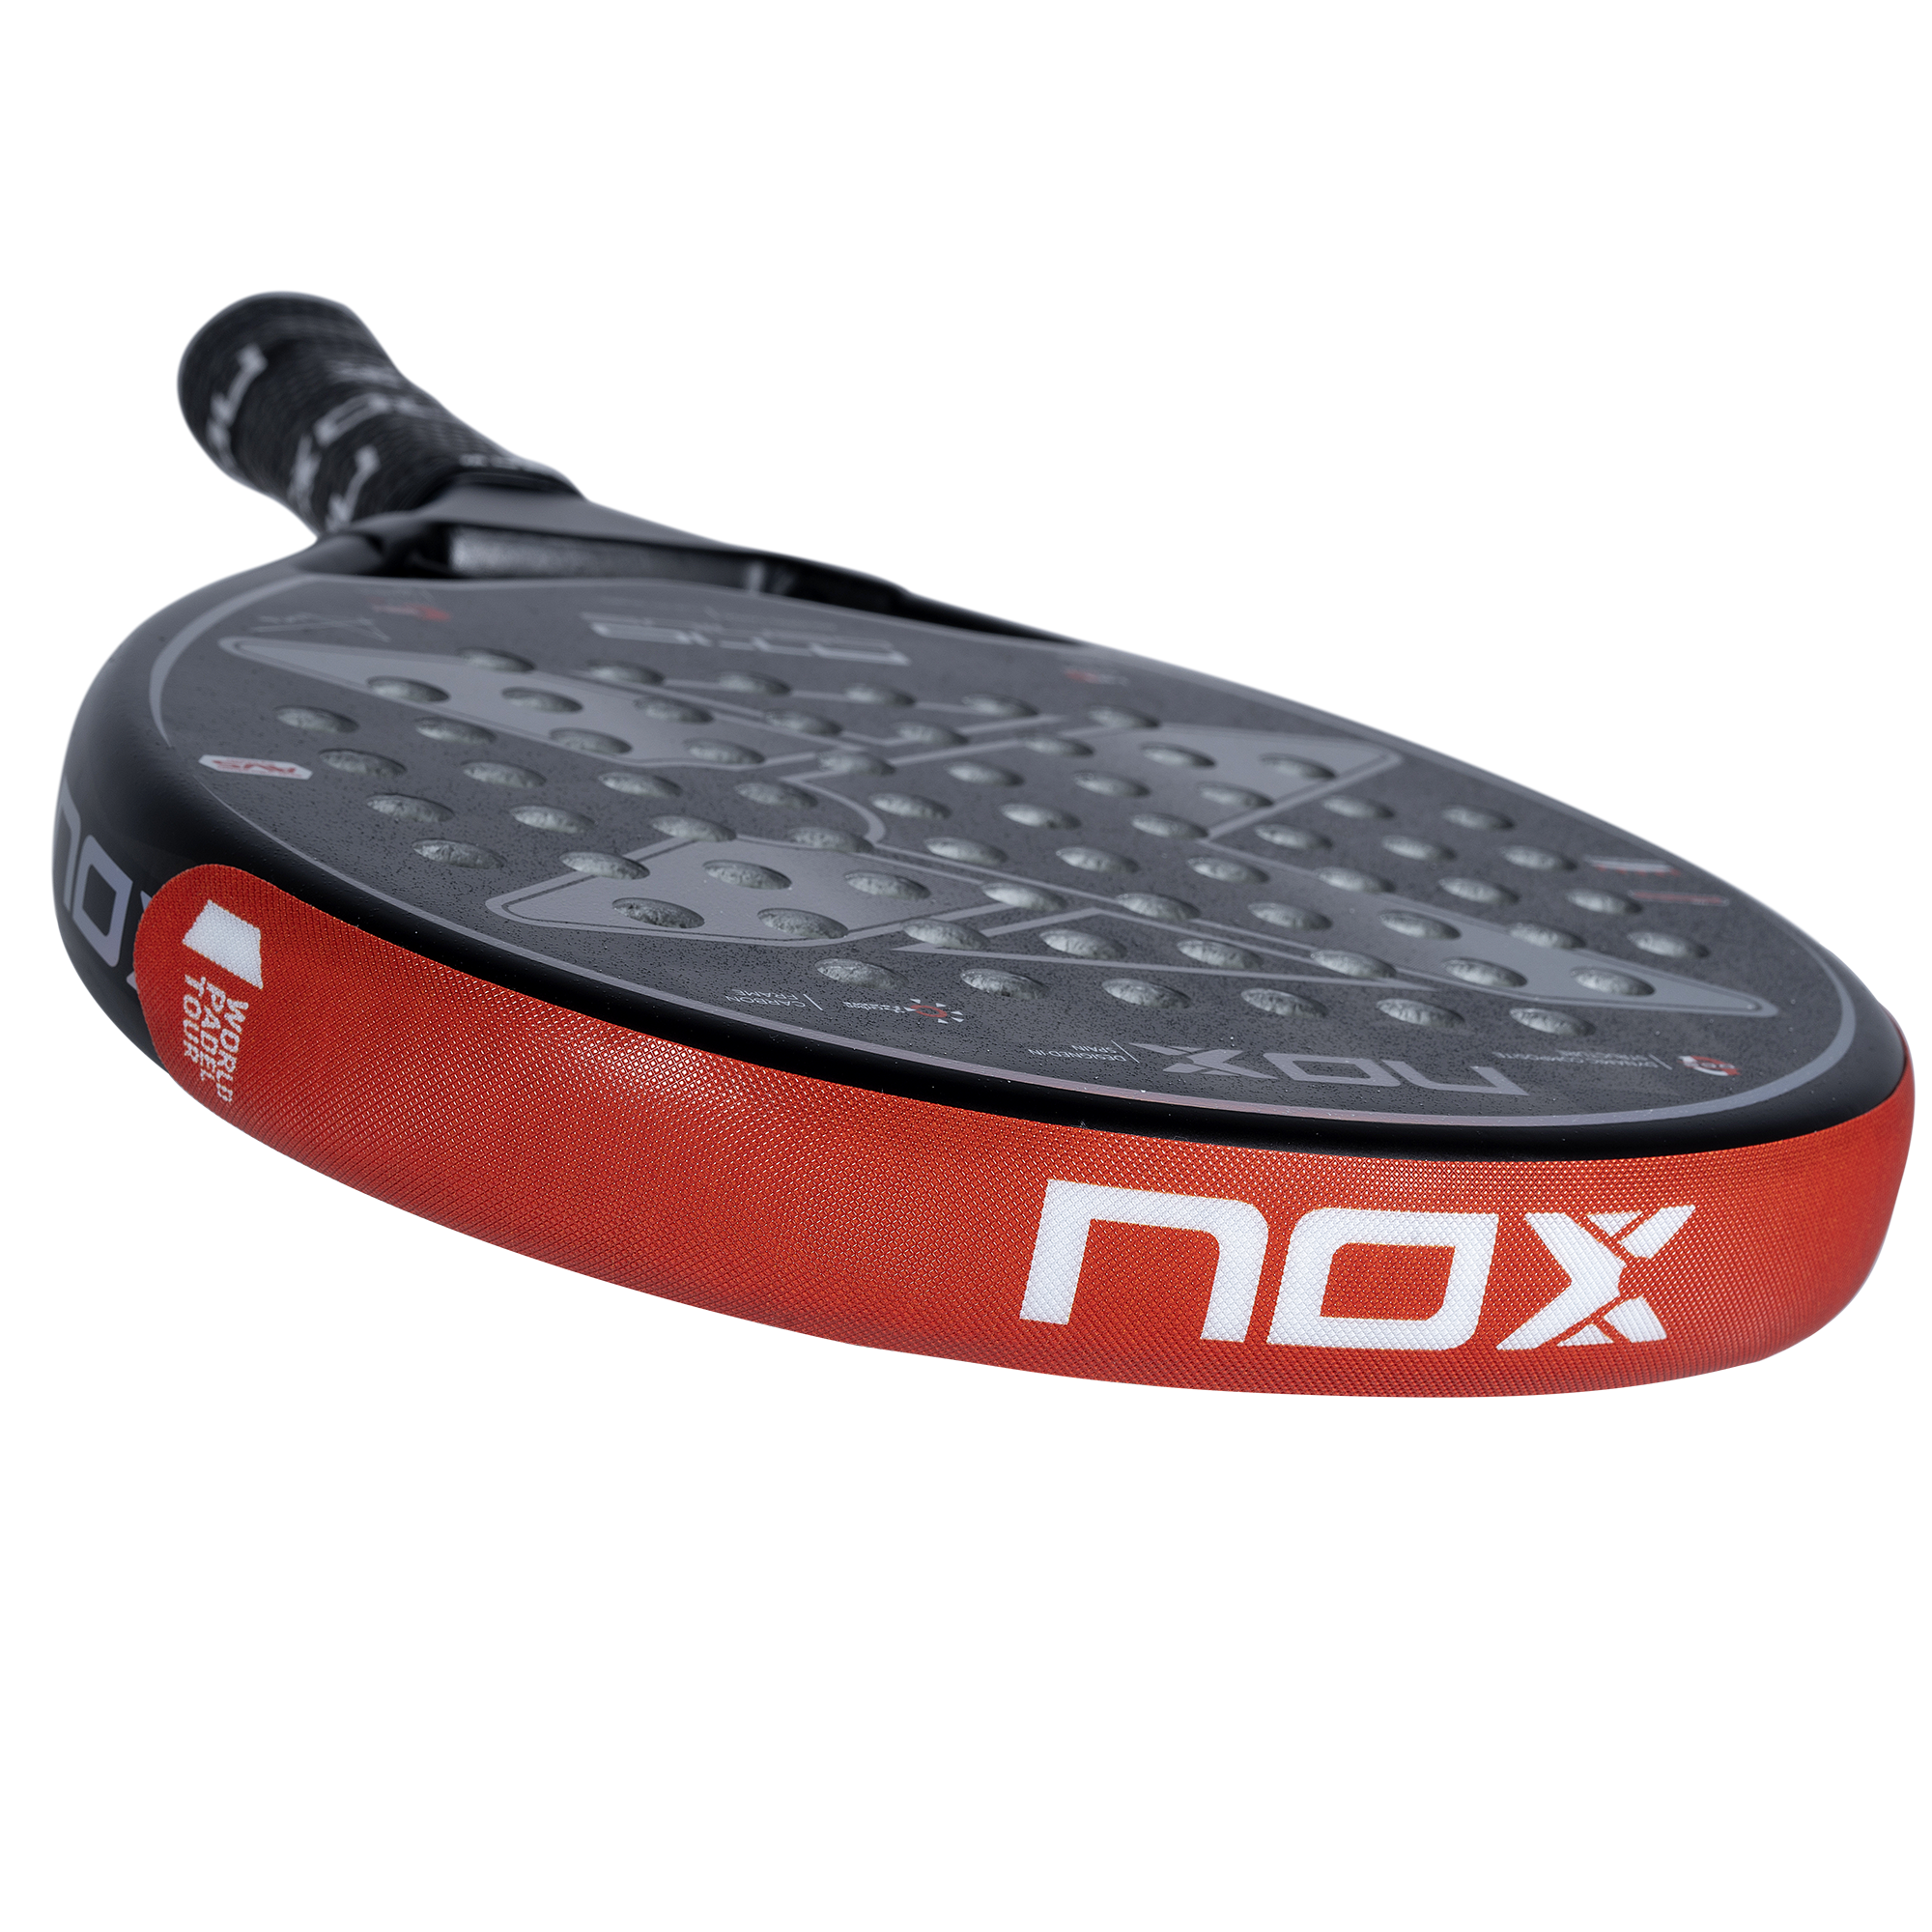 Nox Protector (Rød m/Nox Logo)